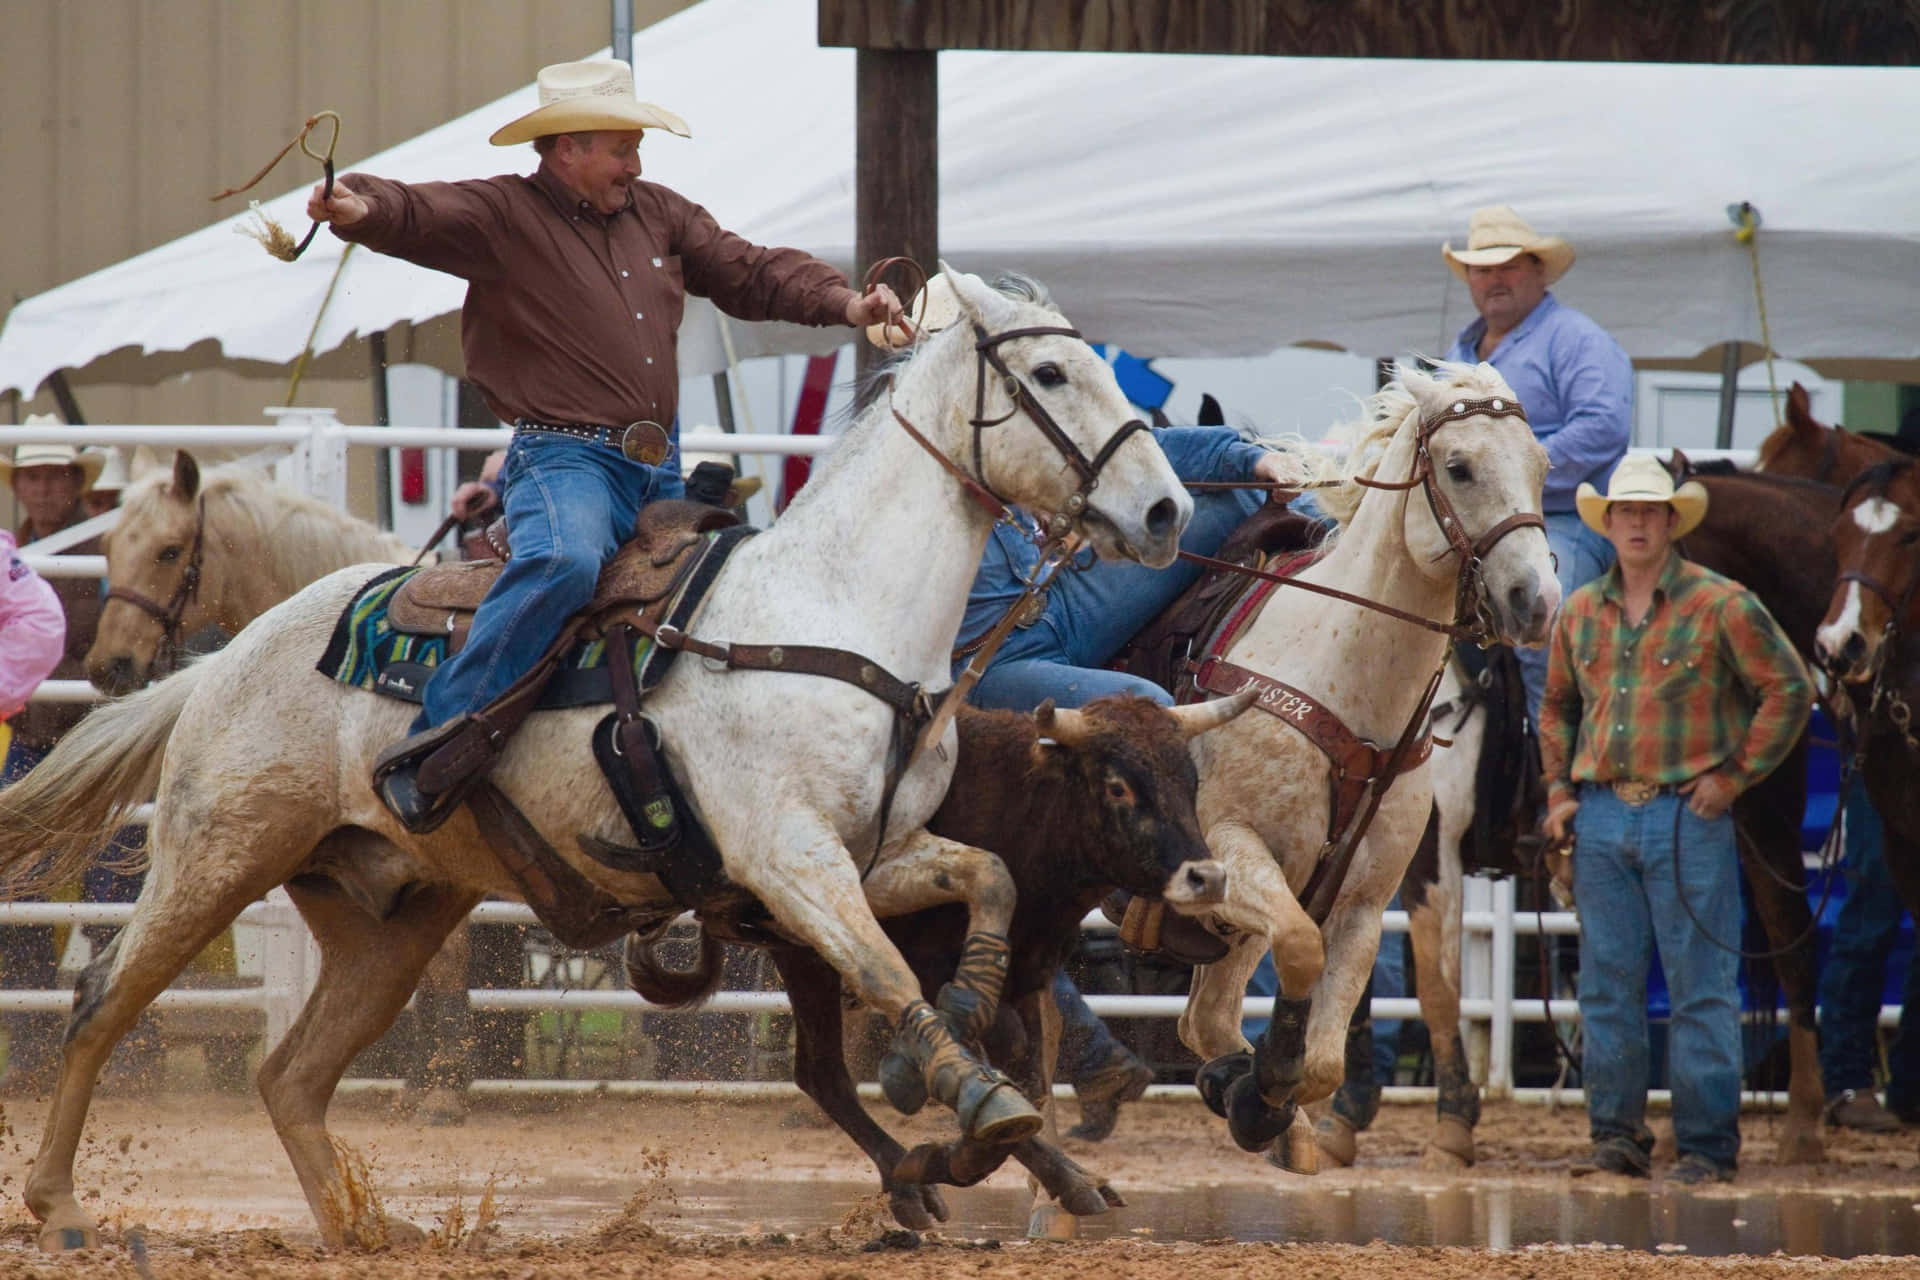 Preparatiper La Sfida - I Cowboy Del Rodeo Mostrano Le Loro Abilità Di Monta. Sfondo